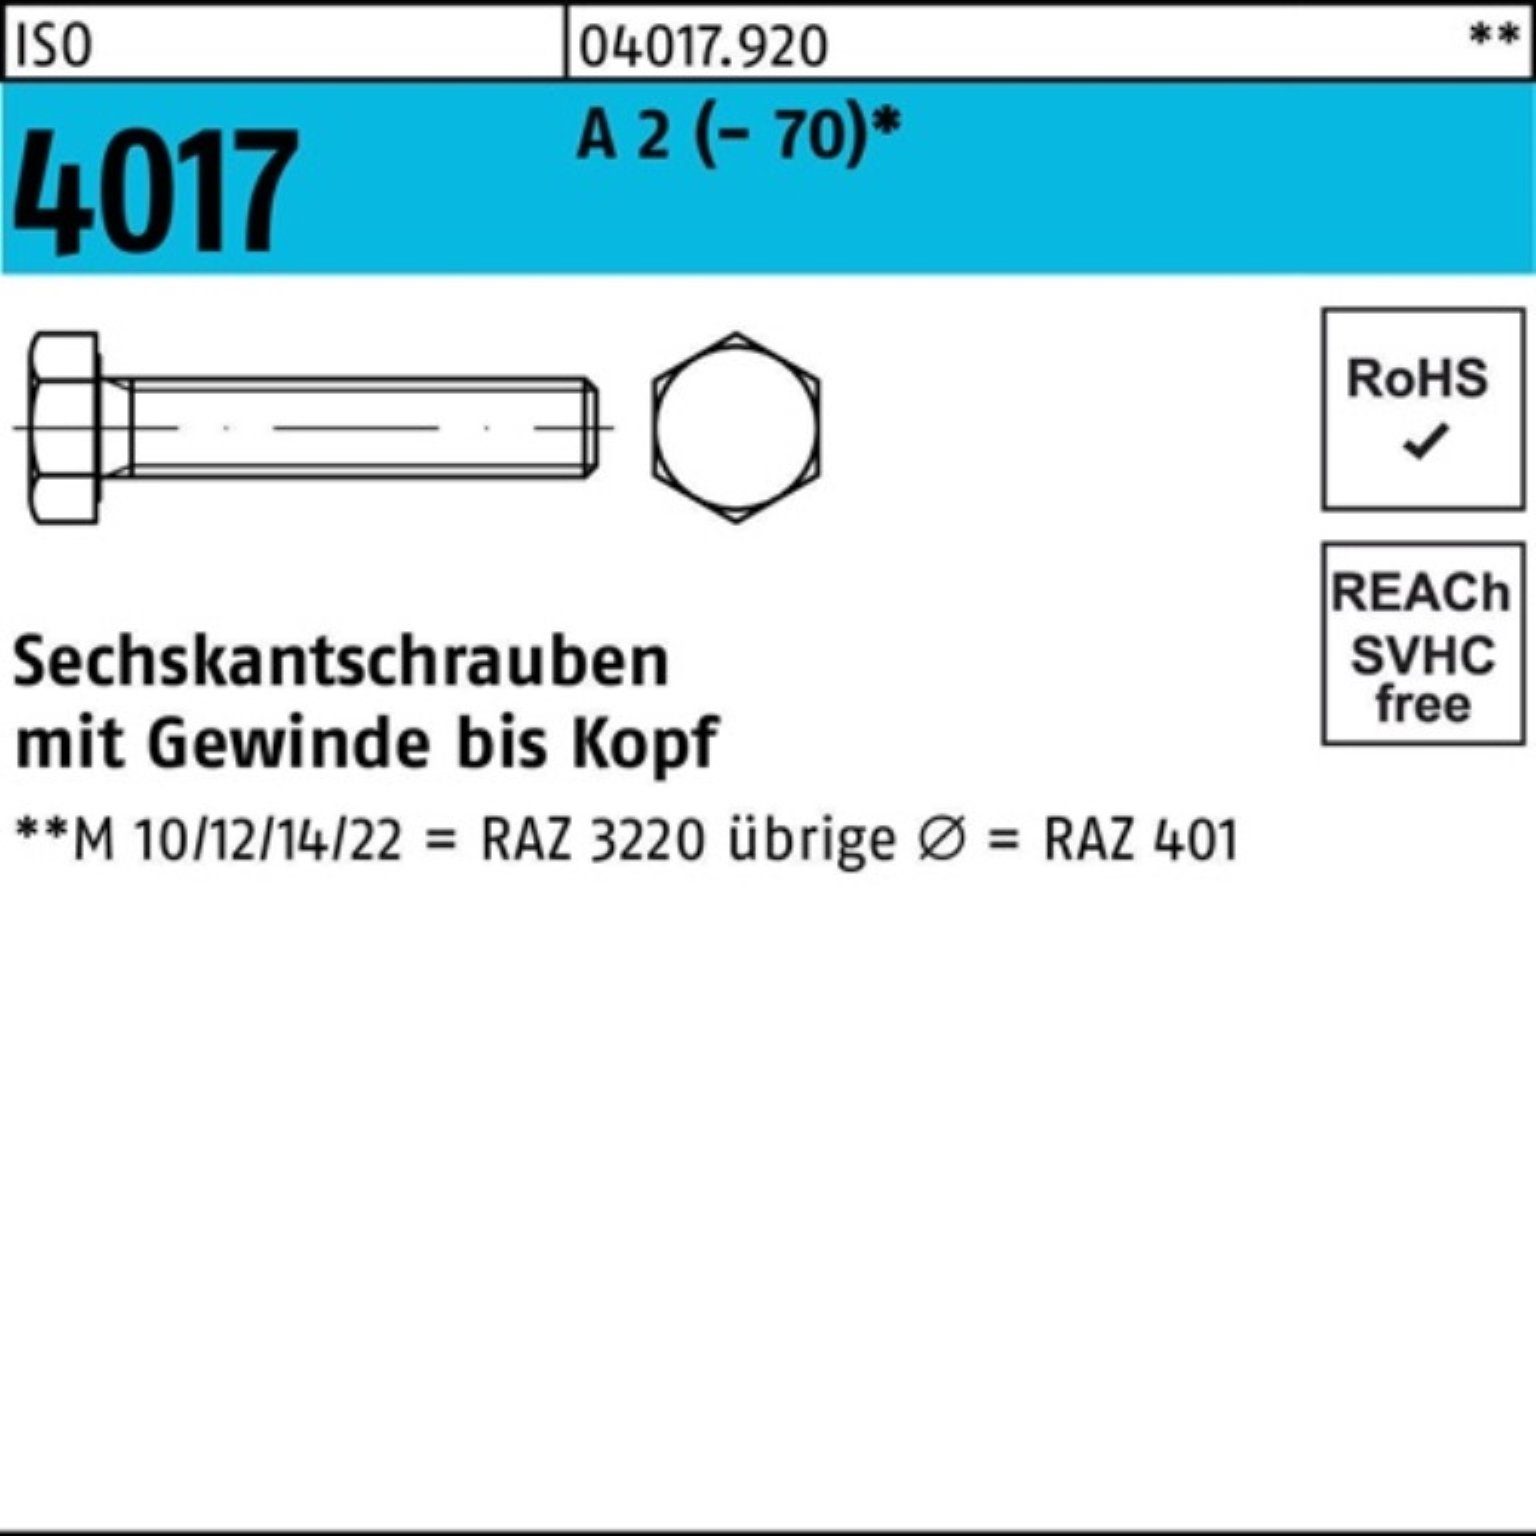 Bufab Sechskantschraube 200er Pack Sechskantschraube ISO 4017 VG M8x 60 A 2 (70) 200 Stück